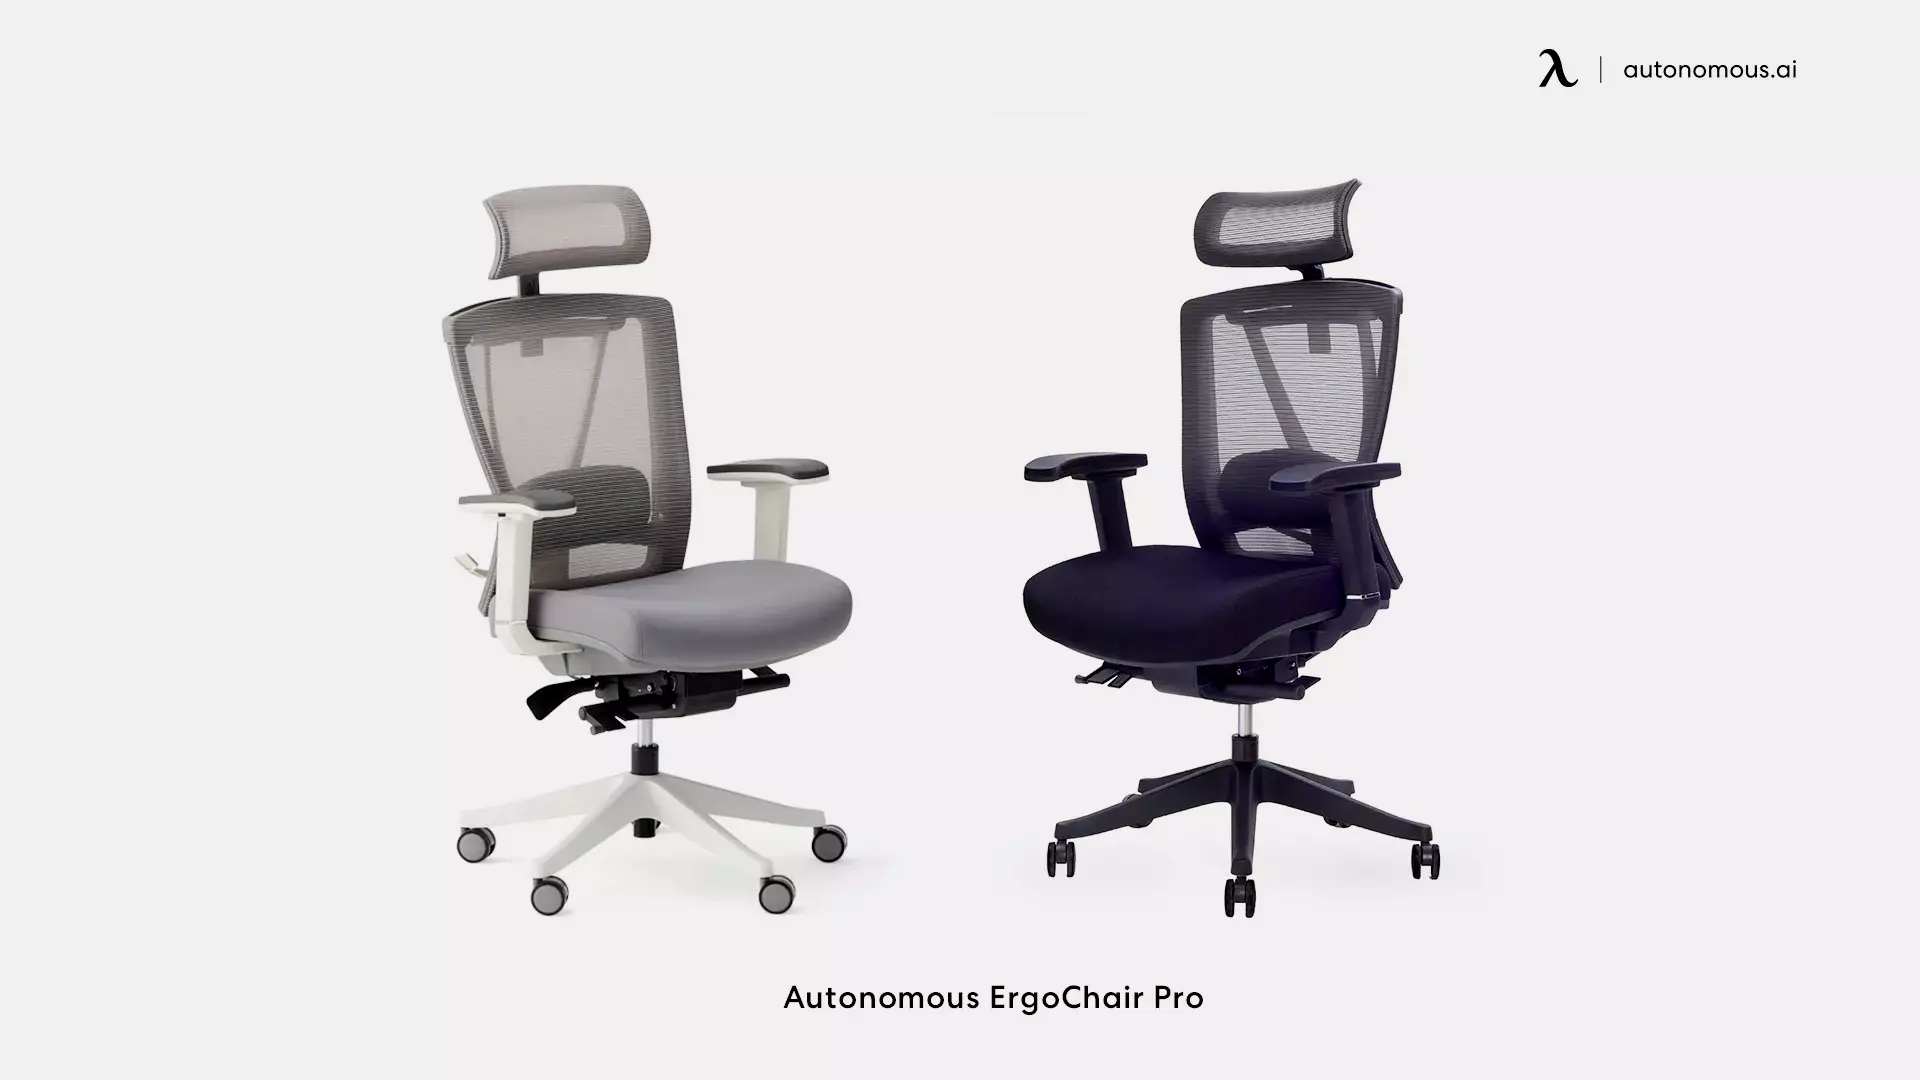 ErgoChair Pro types of chair